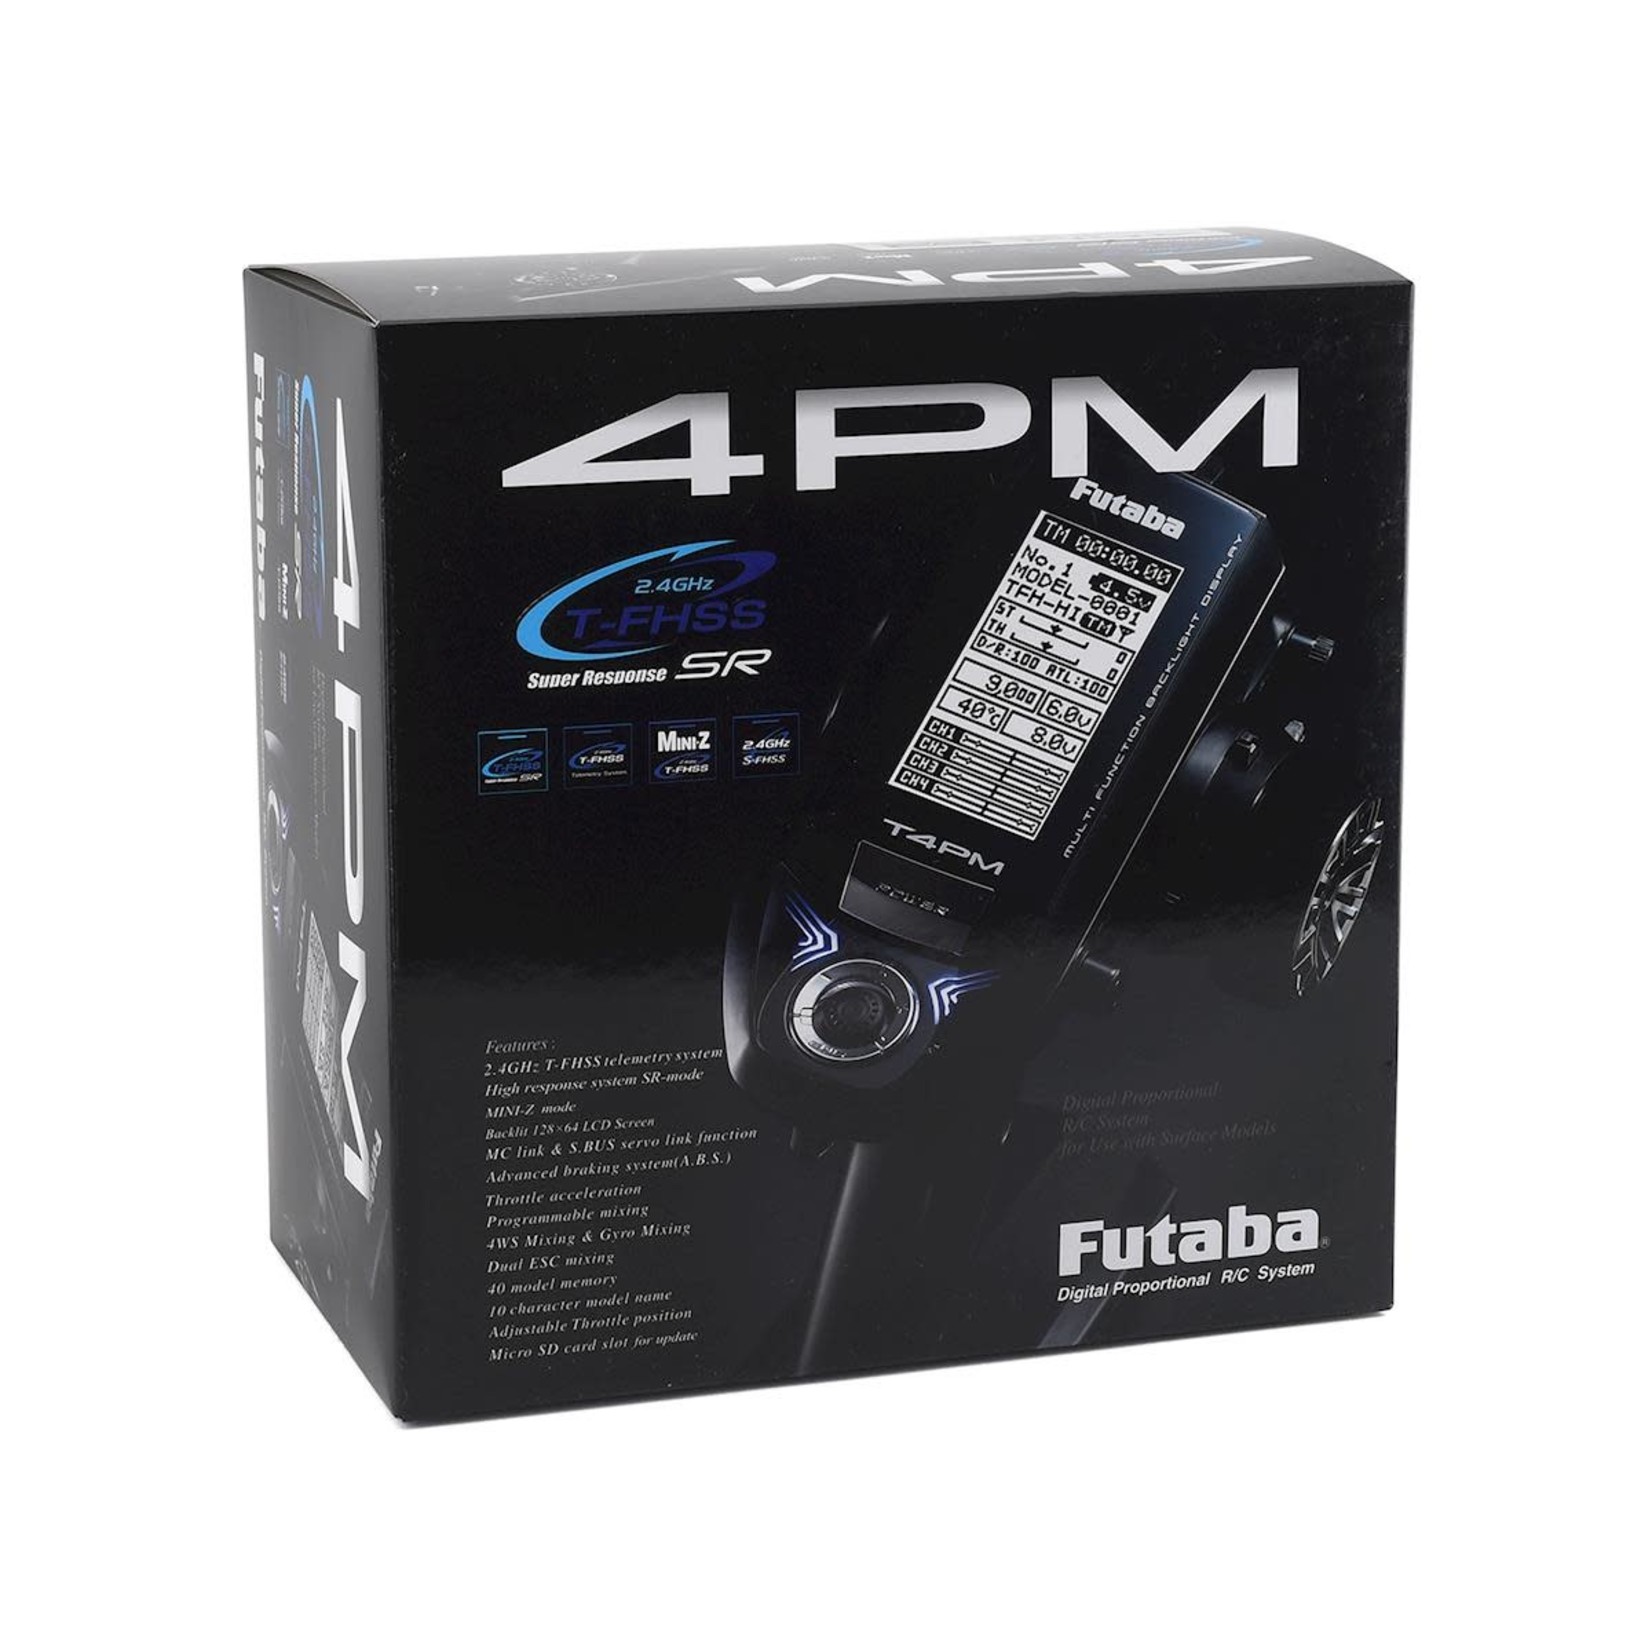 Futaba Futaba 4PM 4-Channel 2.4GHz T-FHSS Radio System w/R304SB Receiver #01004388-3